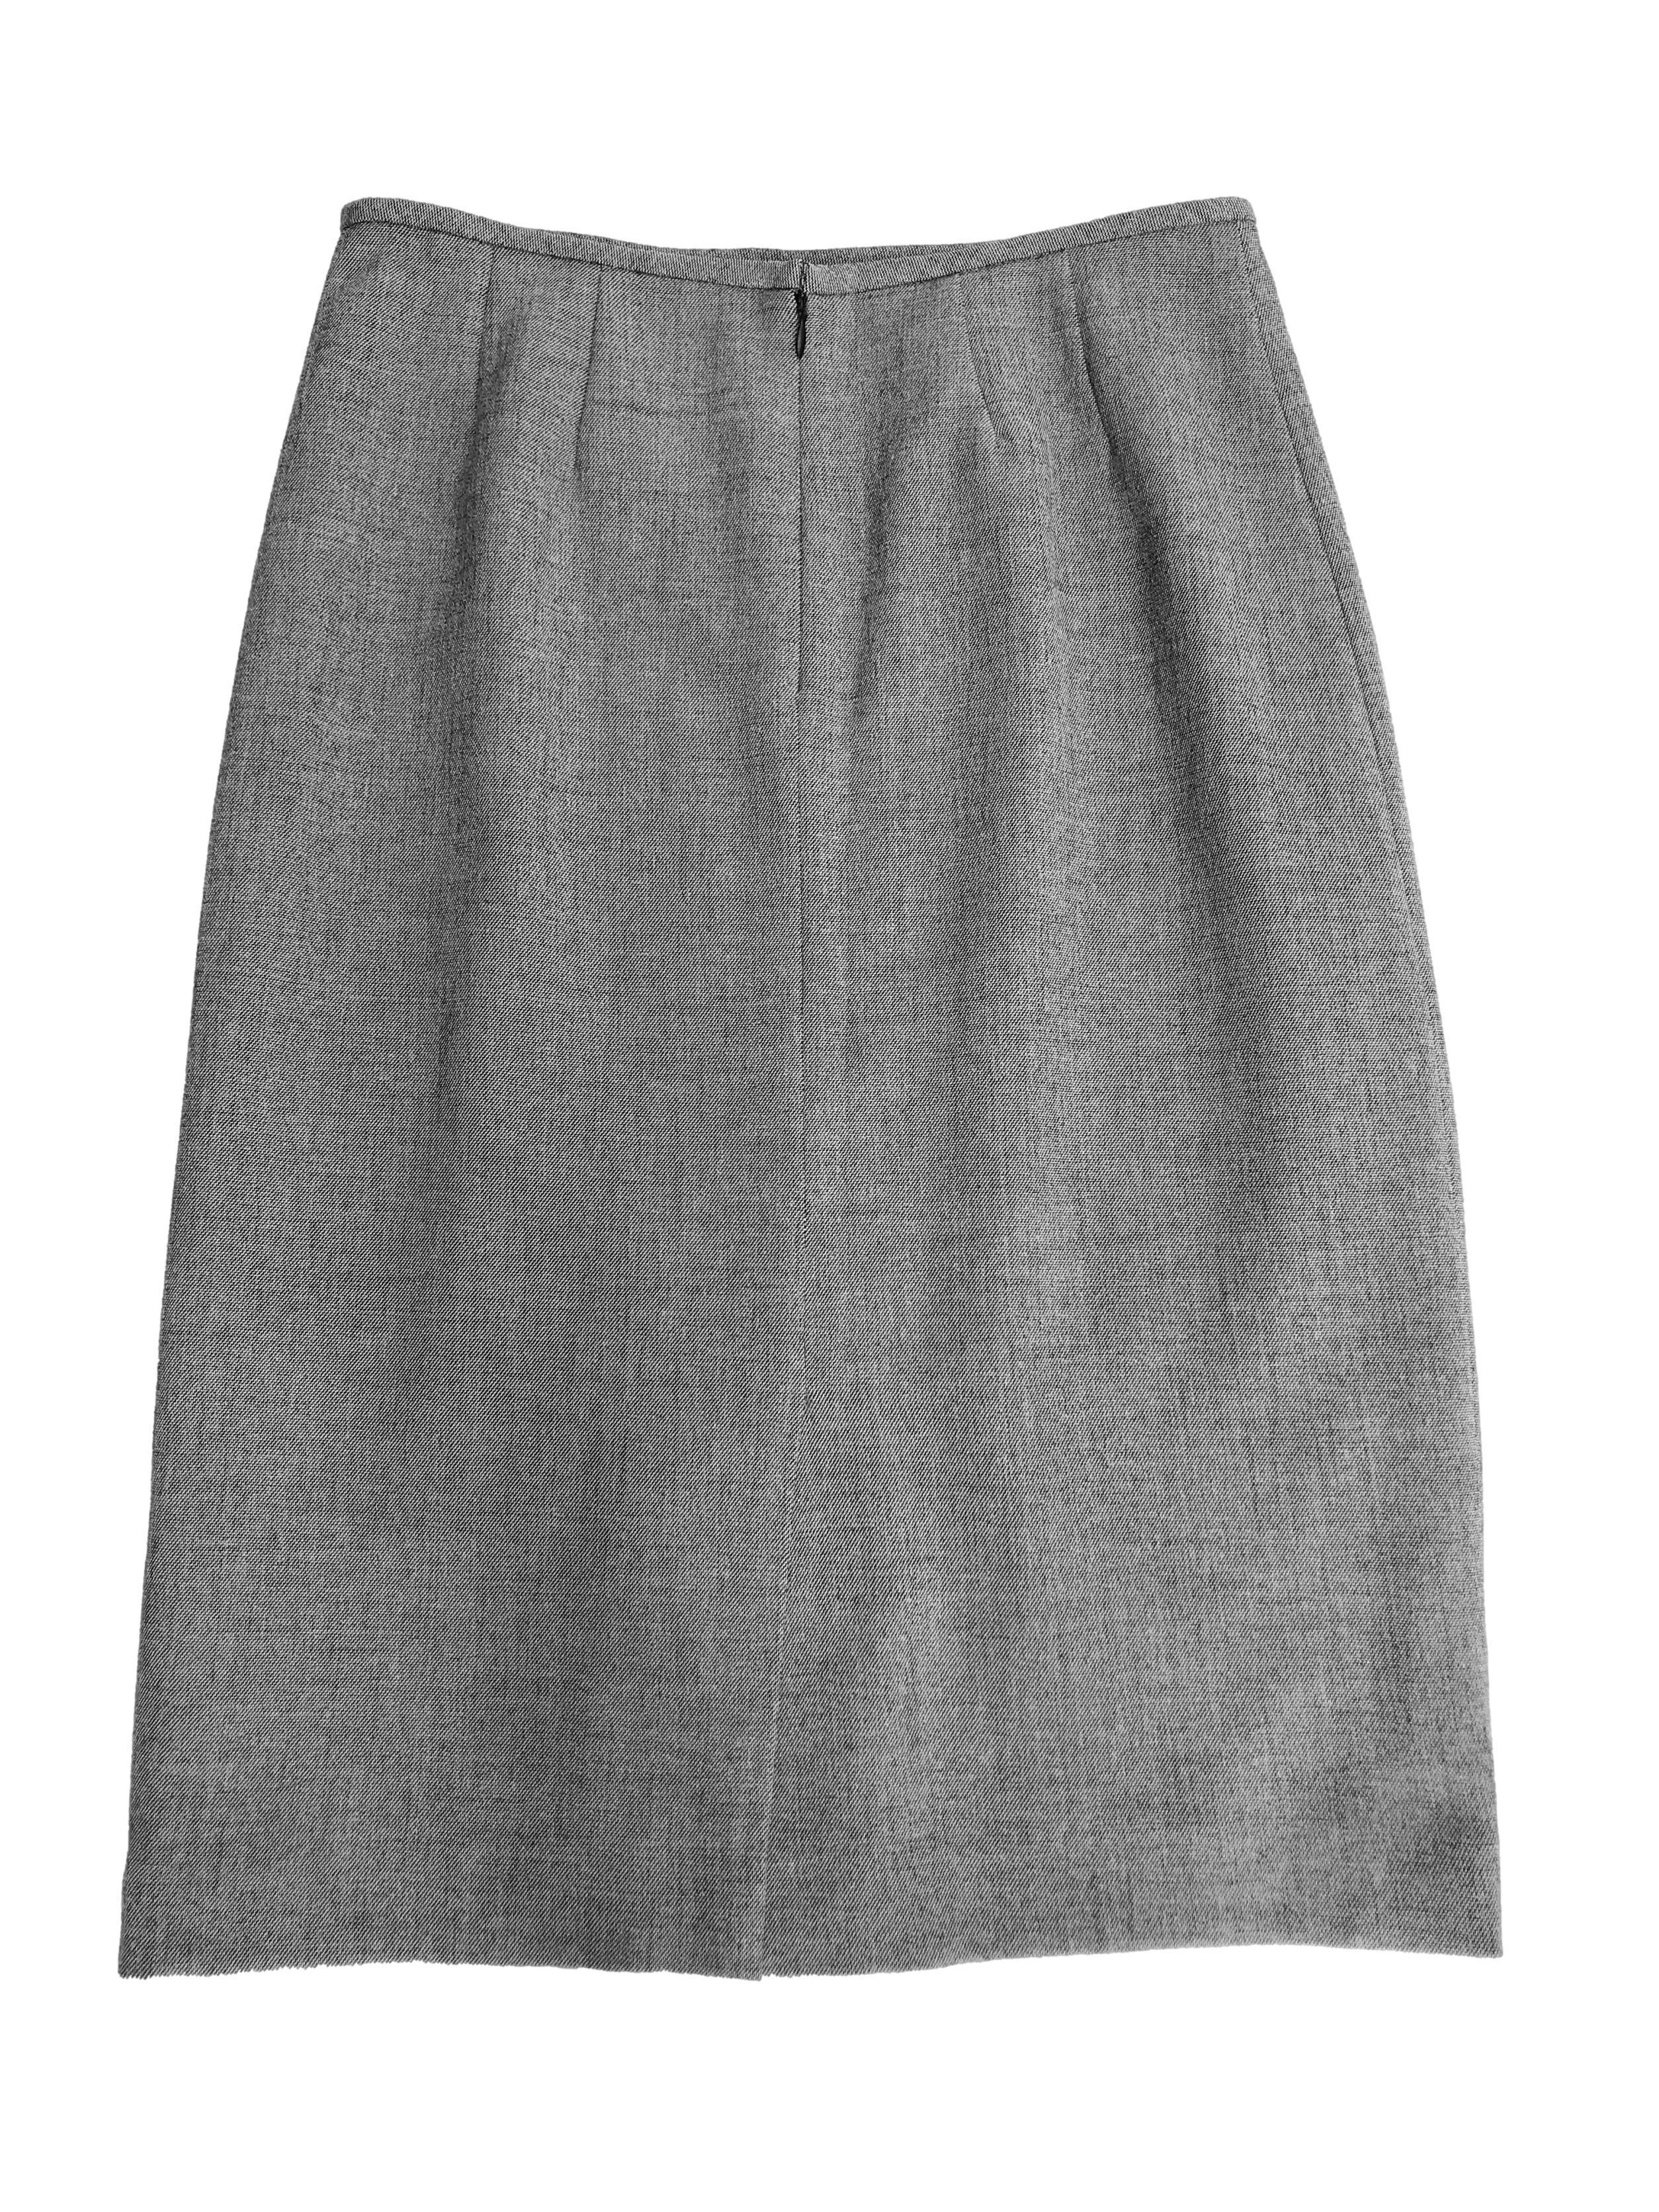 Falda Kasper gris de tela tipo sastre stretch, forrada, con cierre posterior y abertura en la basta. Cintura 76cm Largo 66cm. Excelentes acabados